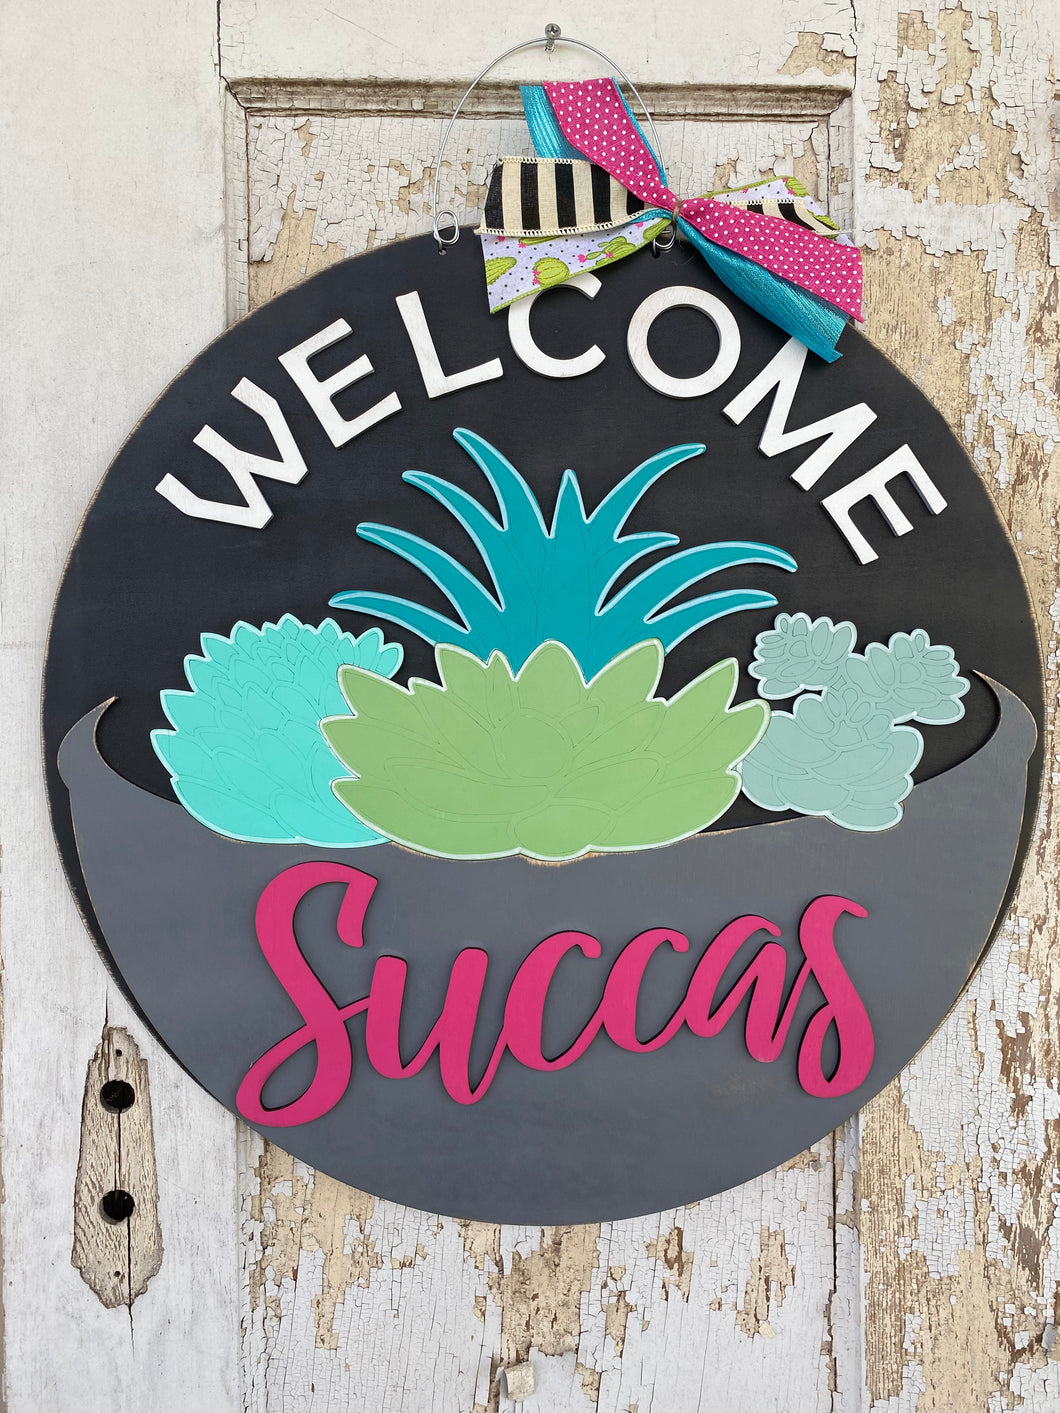 Welcome Succas Door Hanger